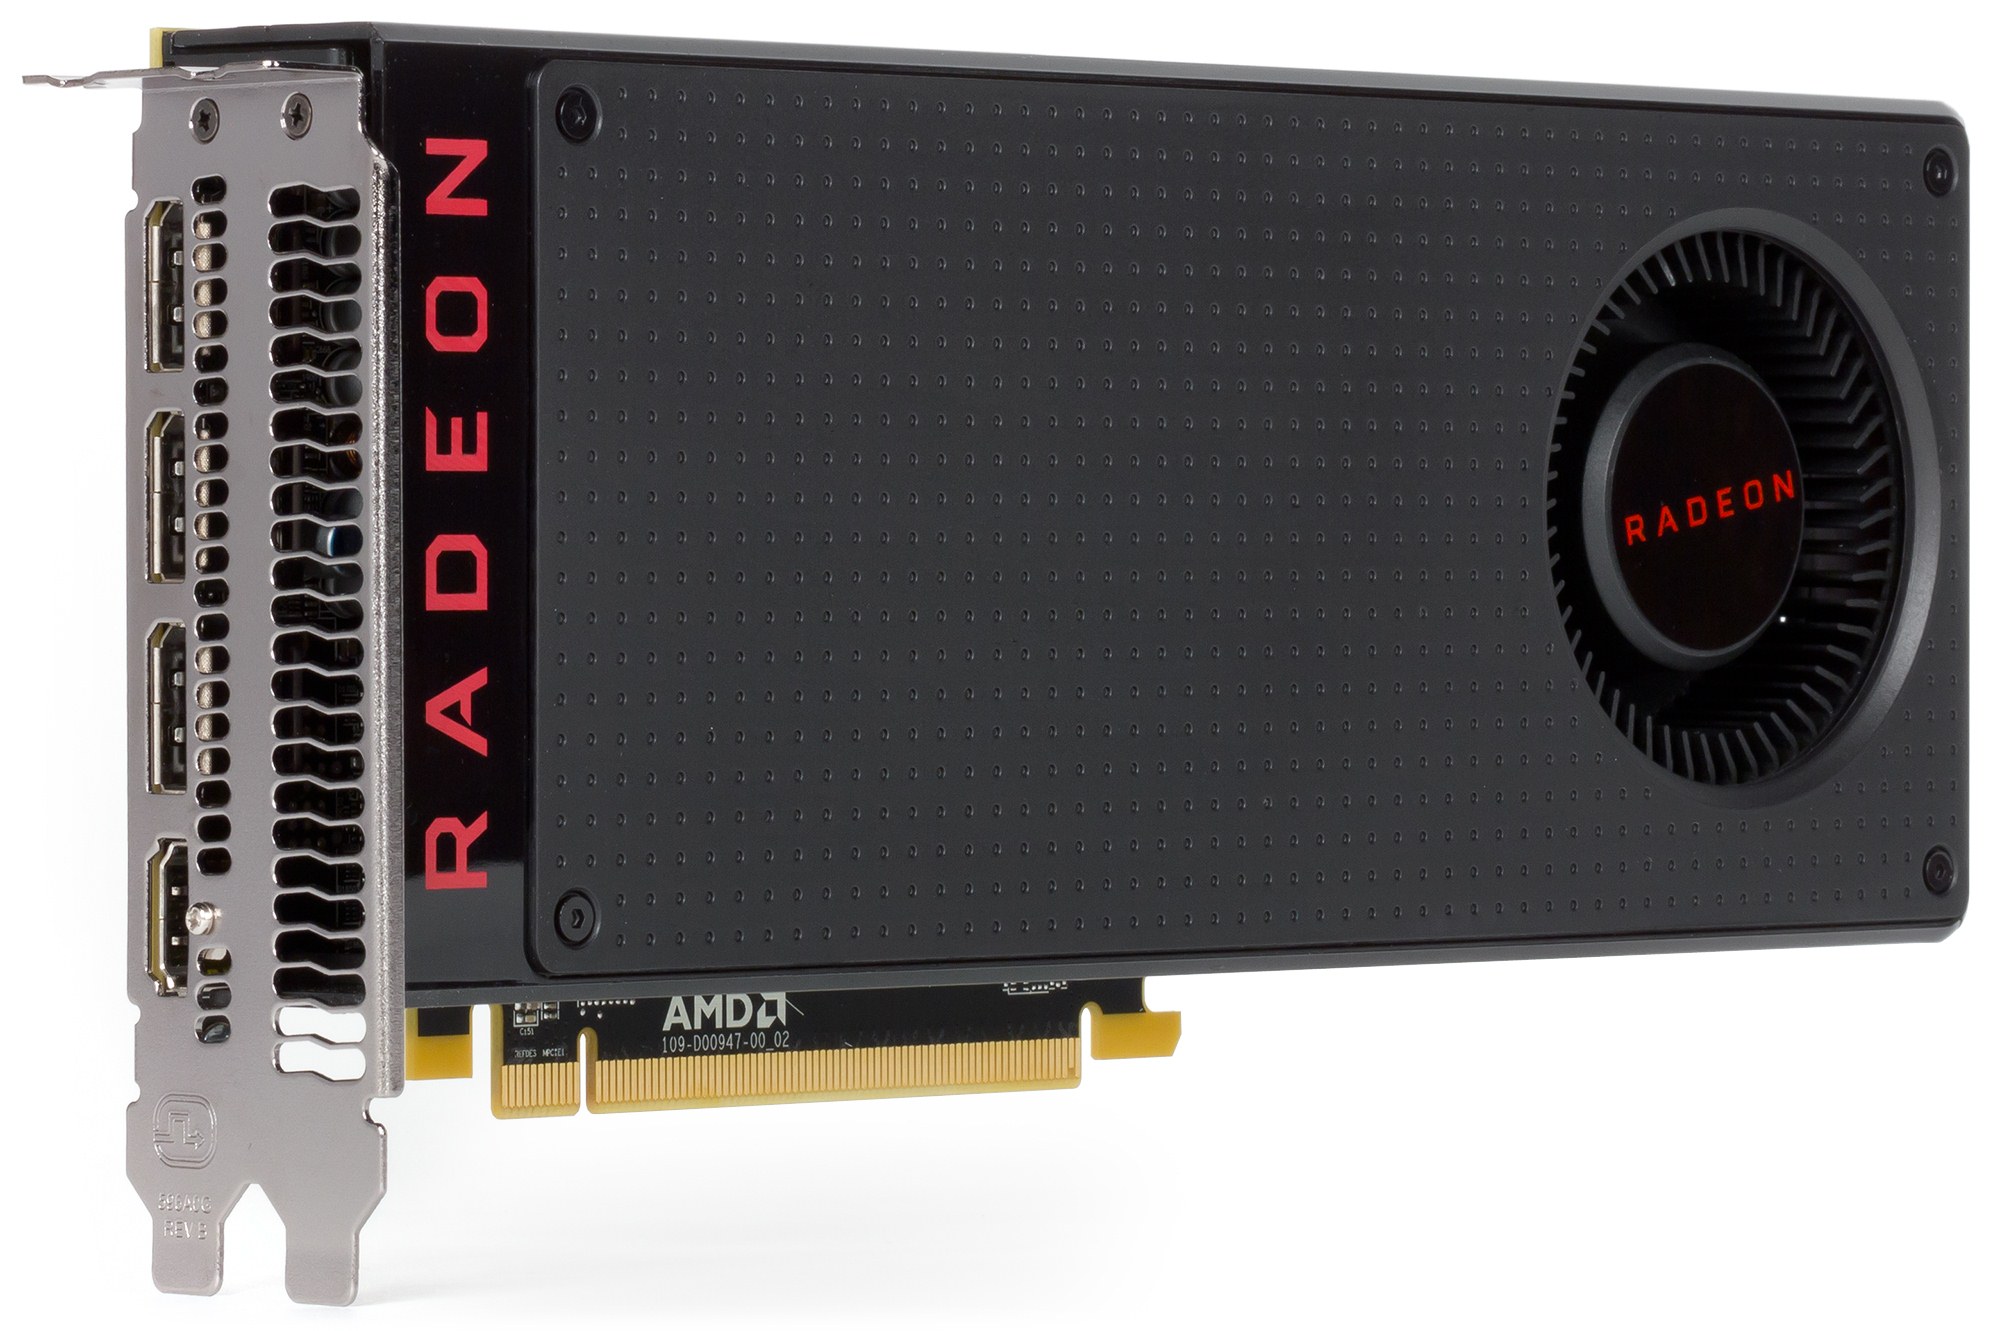 Перепрошивка Radeon RX 480 превращает 4-гигабайтную версию в 8-гигабайтную - 1